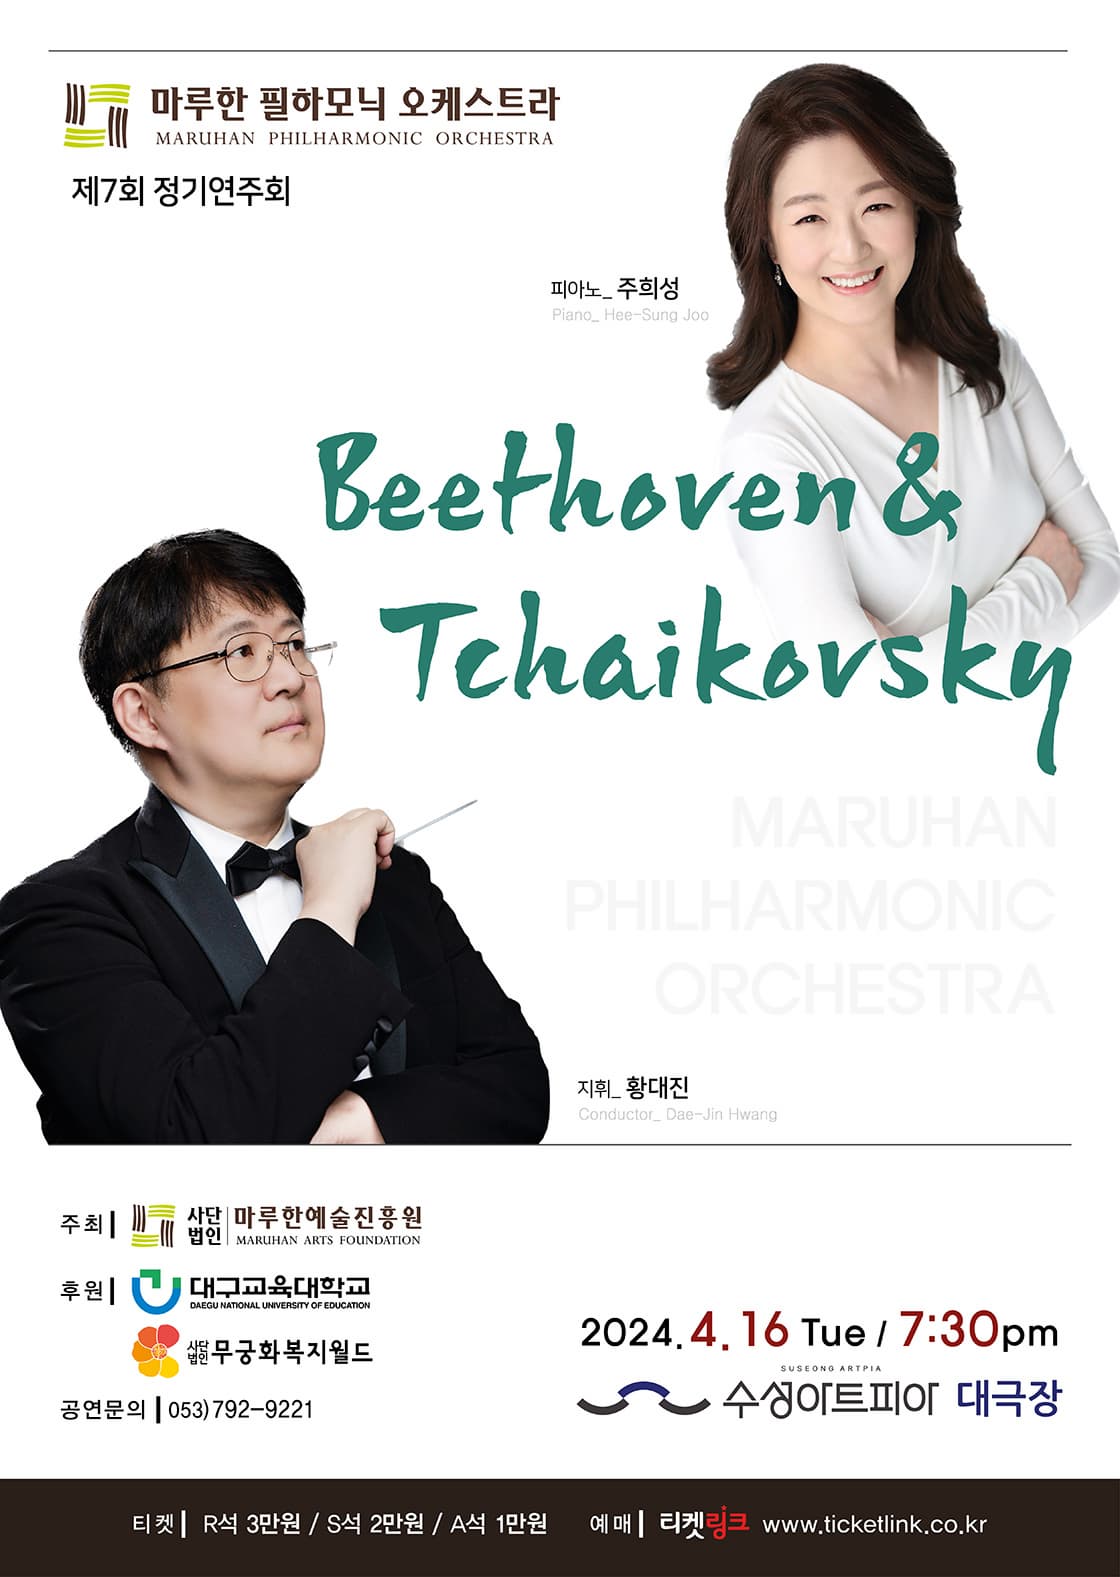 [대구] 제7회 마루한 필하모닉 오케스트라 정기연주회: Beethoven & Tchaikovsky